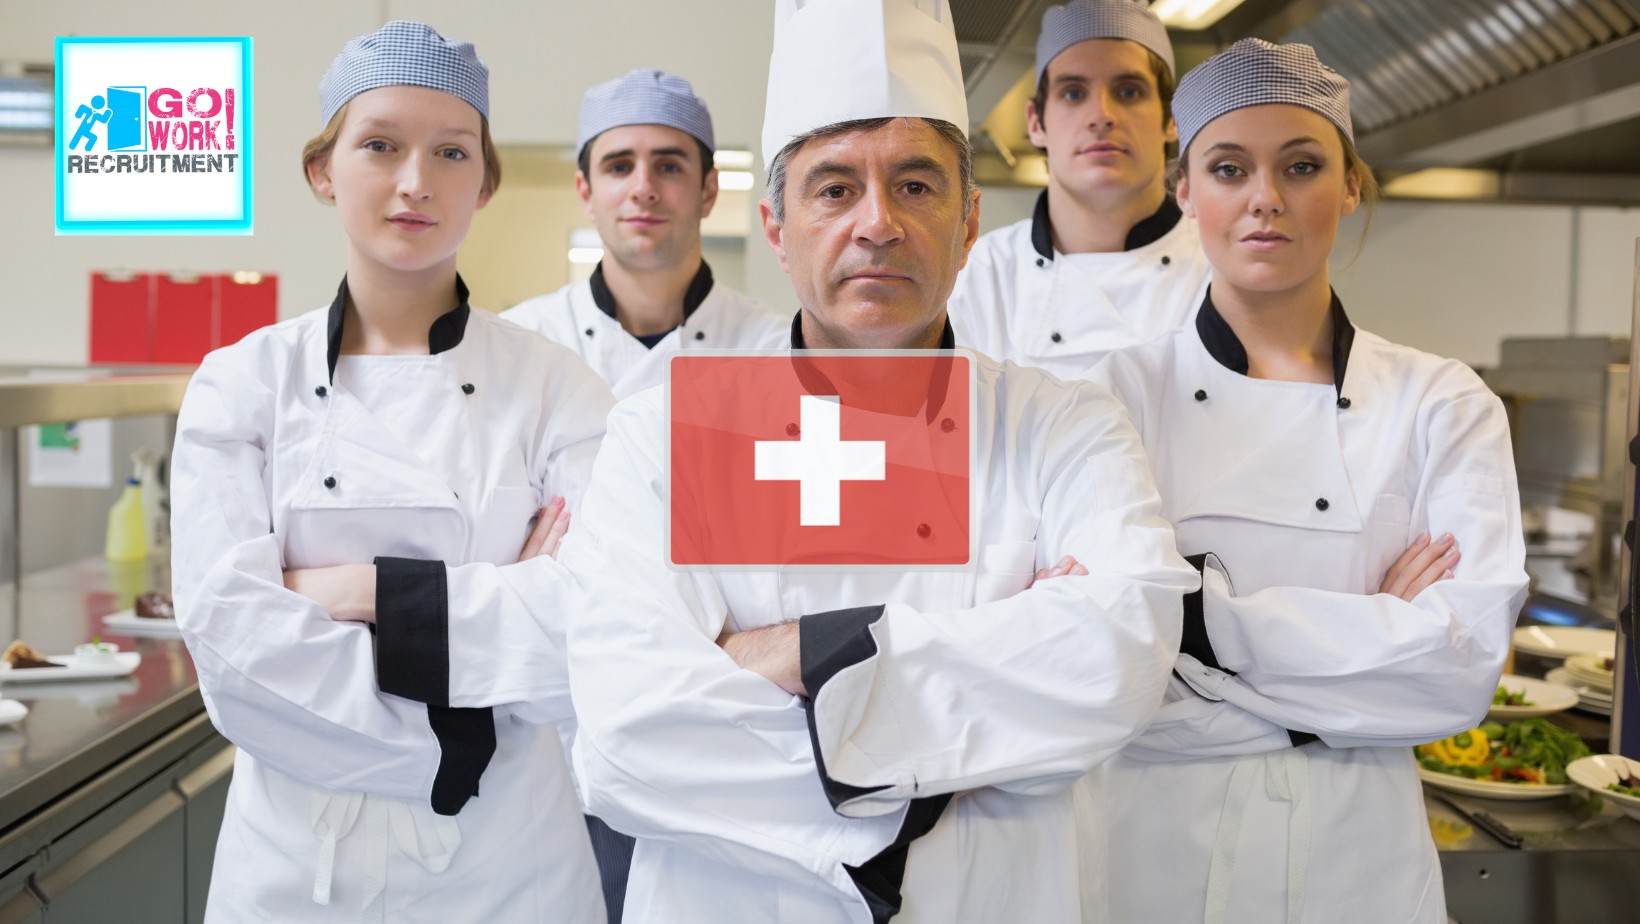 Chef de Partie job in Switzerland